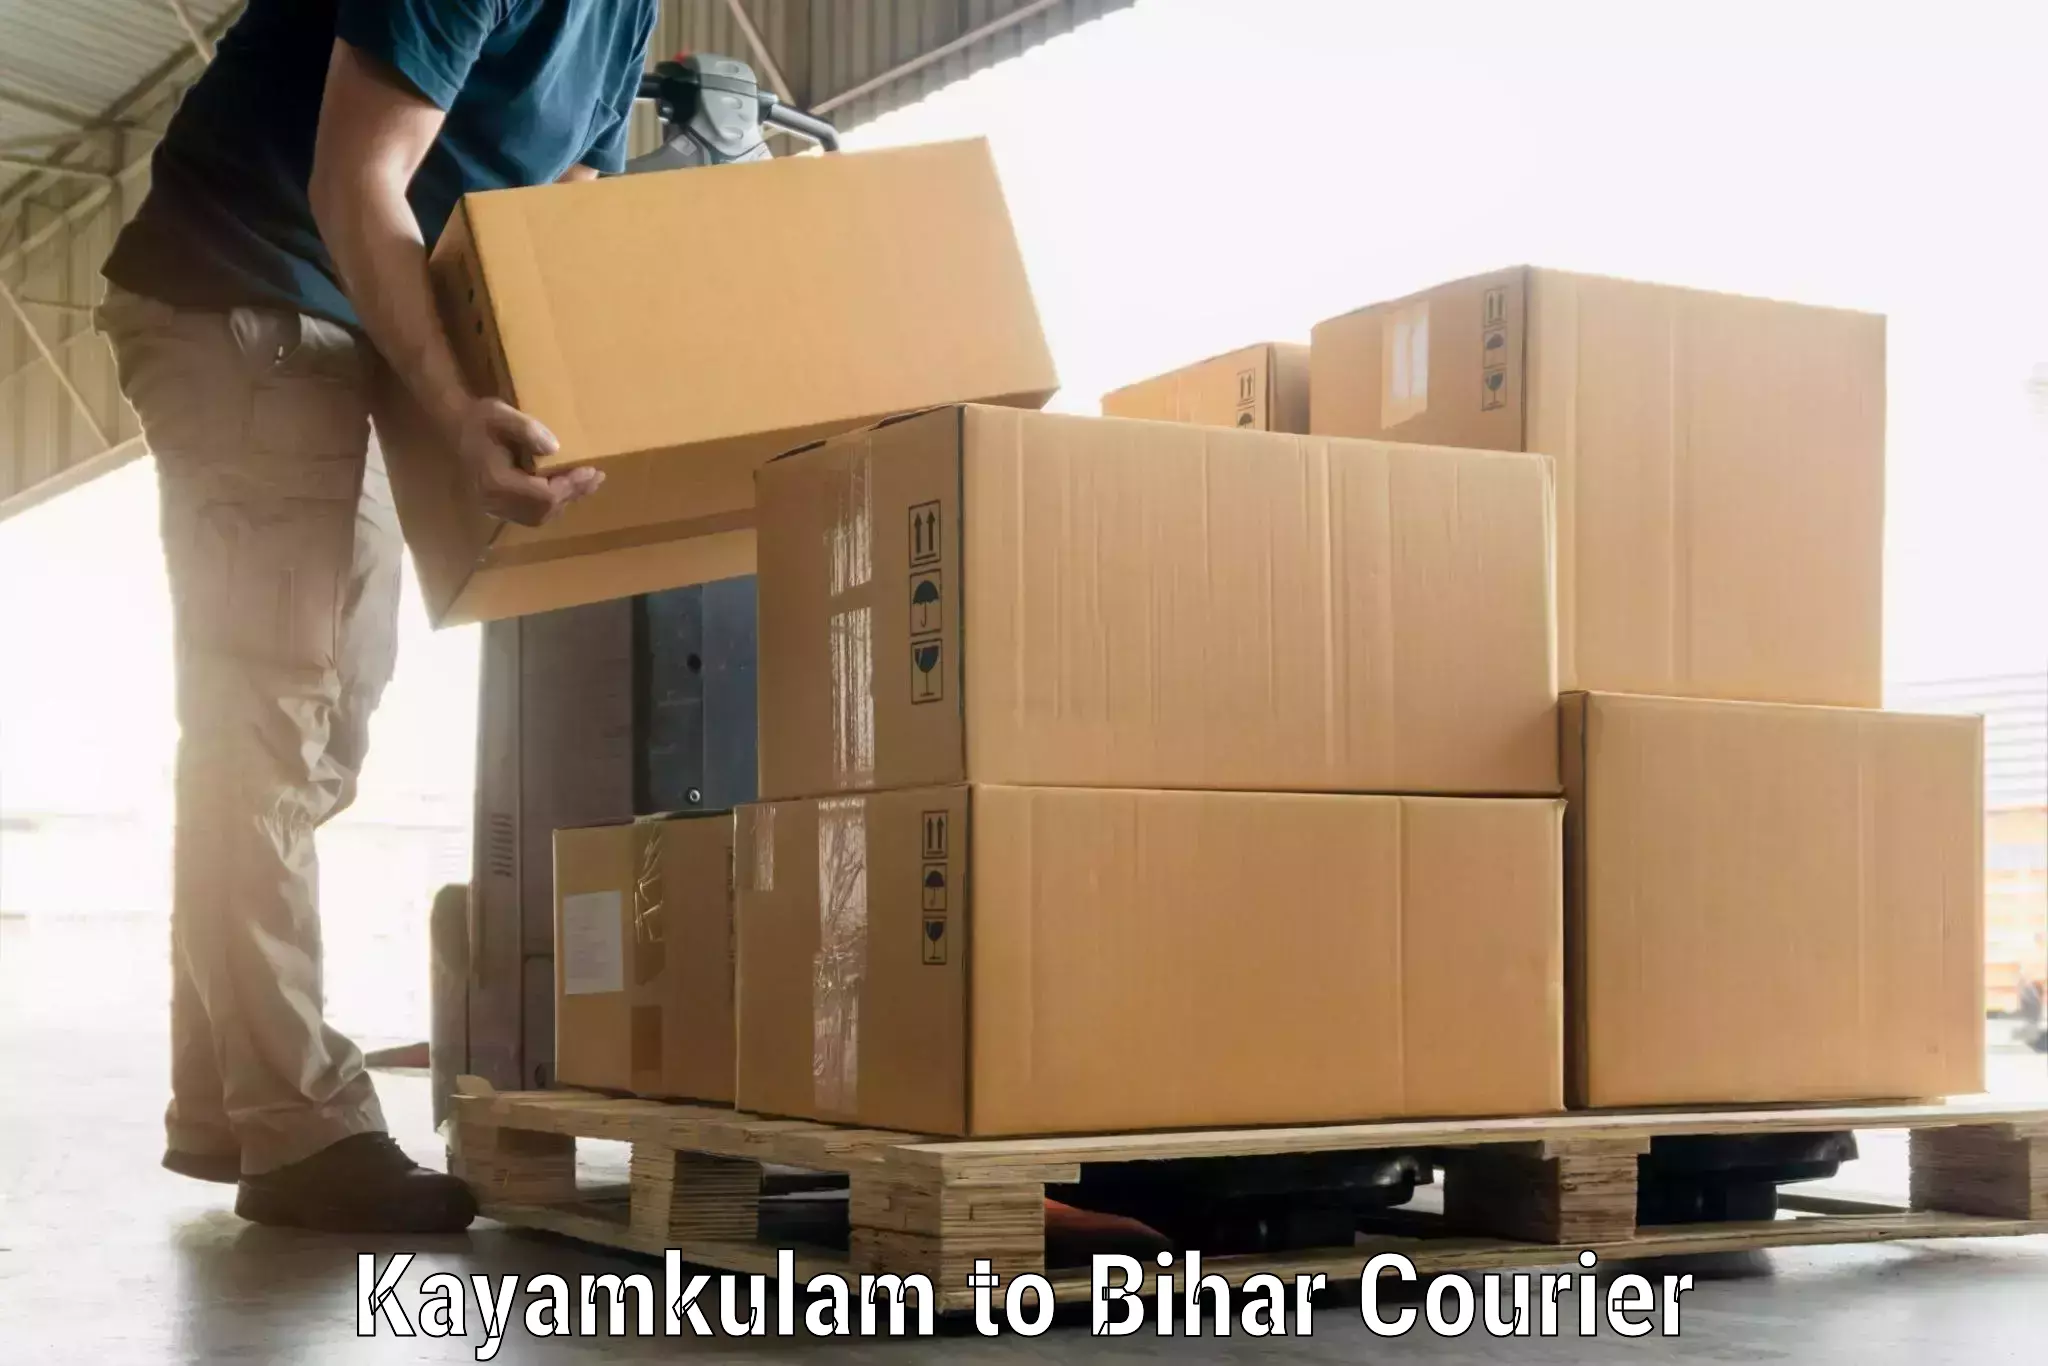 Luggage shipment tracking Kayamkulam to Jevargi